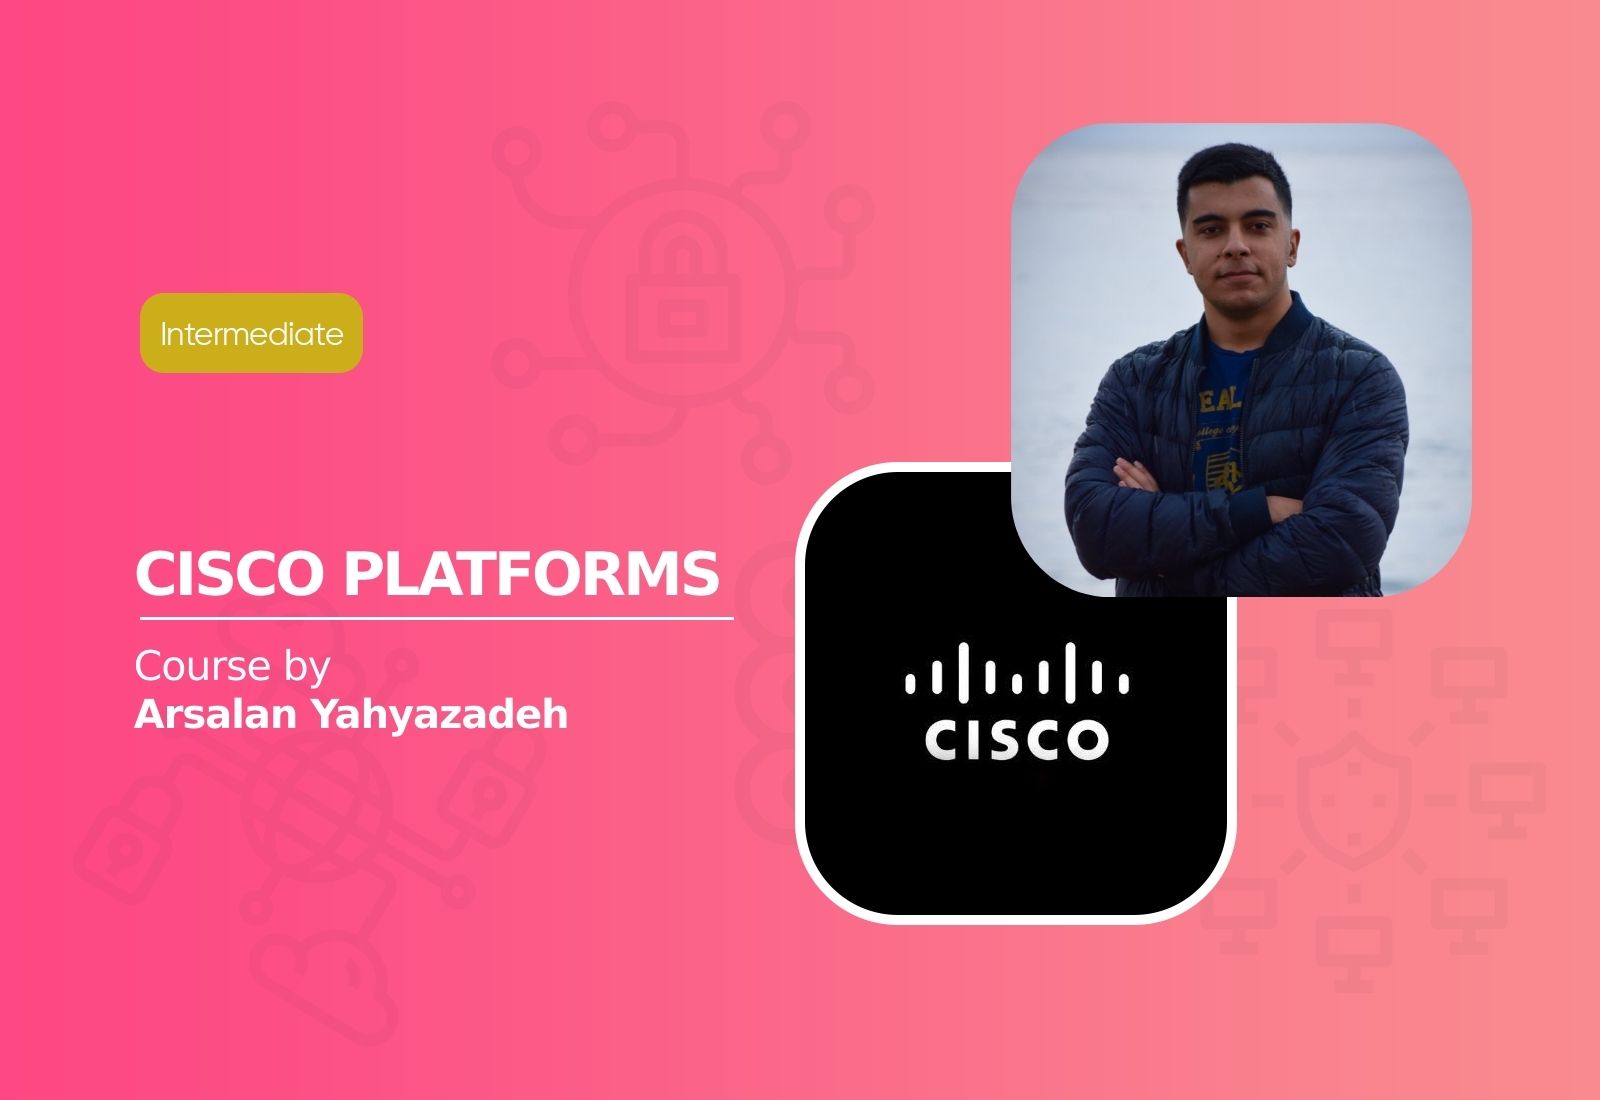 Cisco Platforms